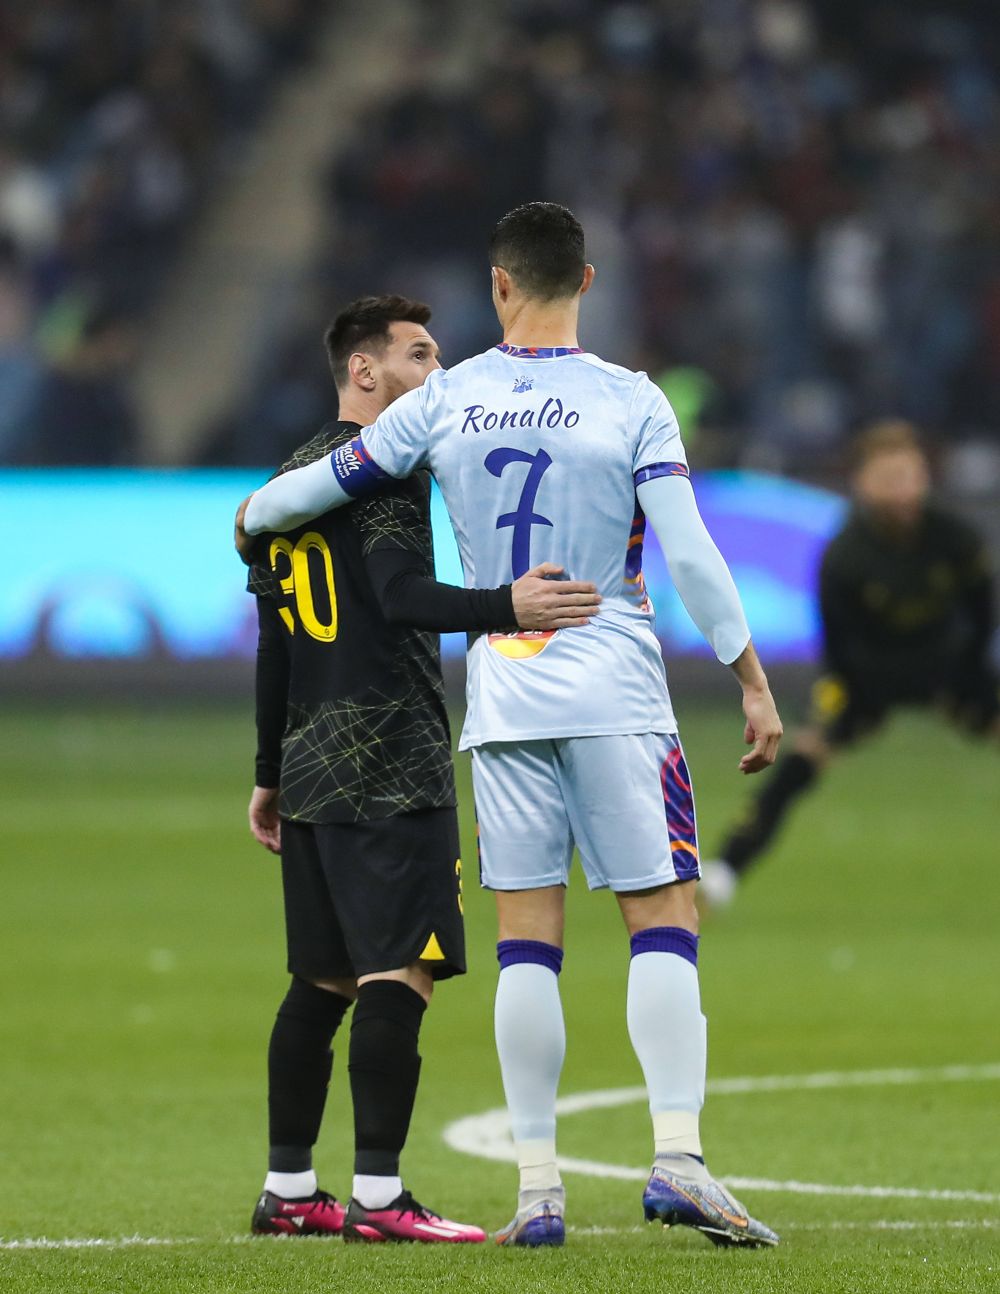 PSG a publicat imaginile cu Messi și Ronaldo care nu s-au văzut la TV: "Ce secvență incredibilă!"_28